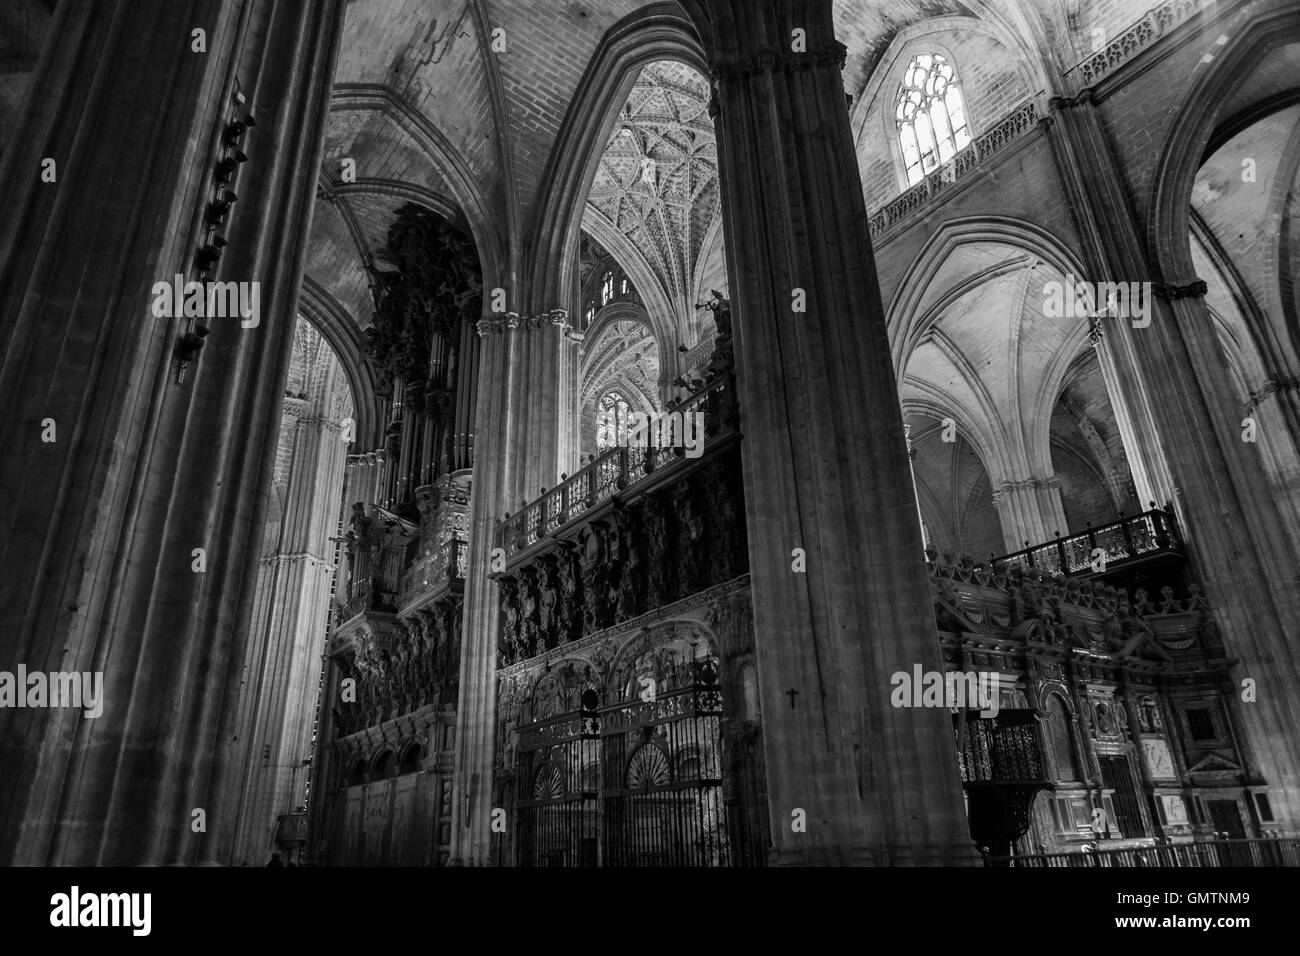 Chor und Orgel, Catedral de Santa María De La Sede, Sevilla, Andalusien, Spanien Stockfoto